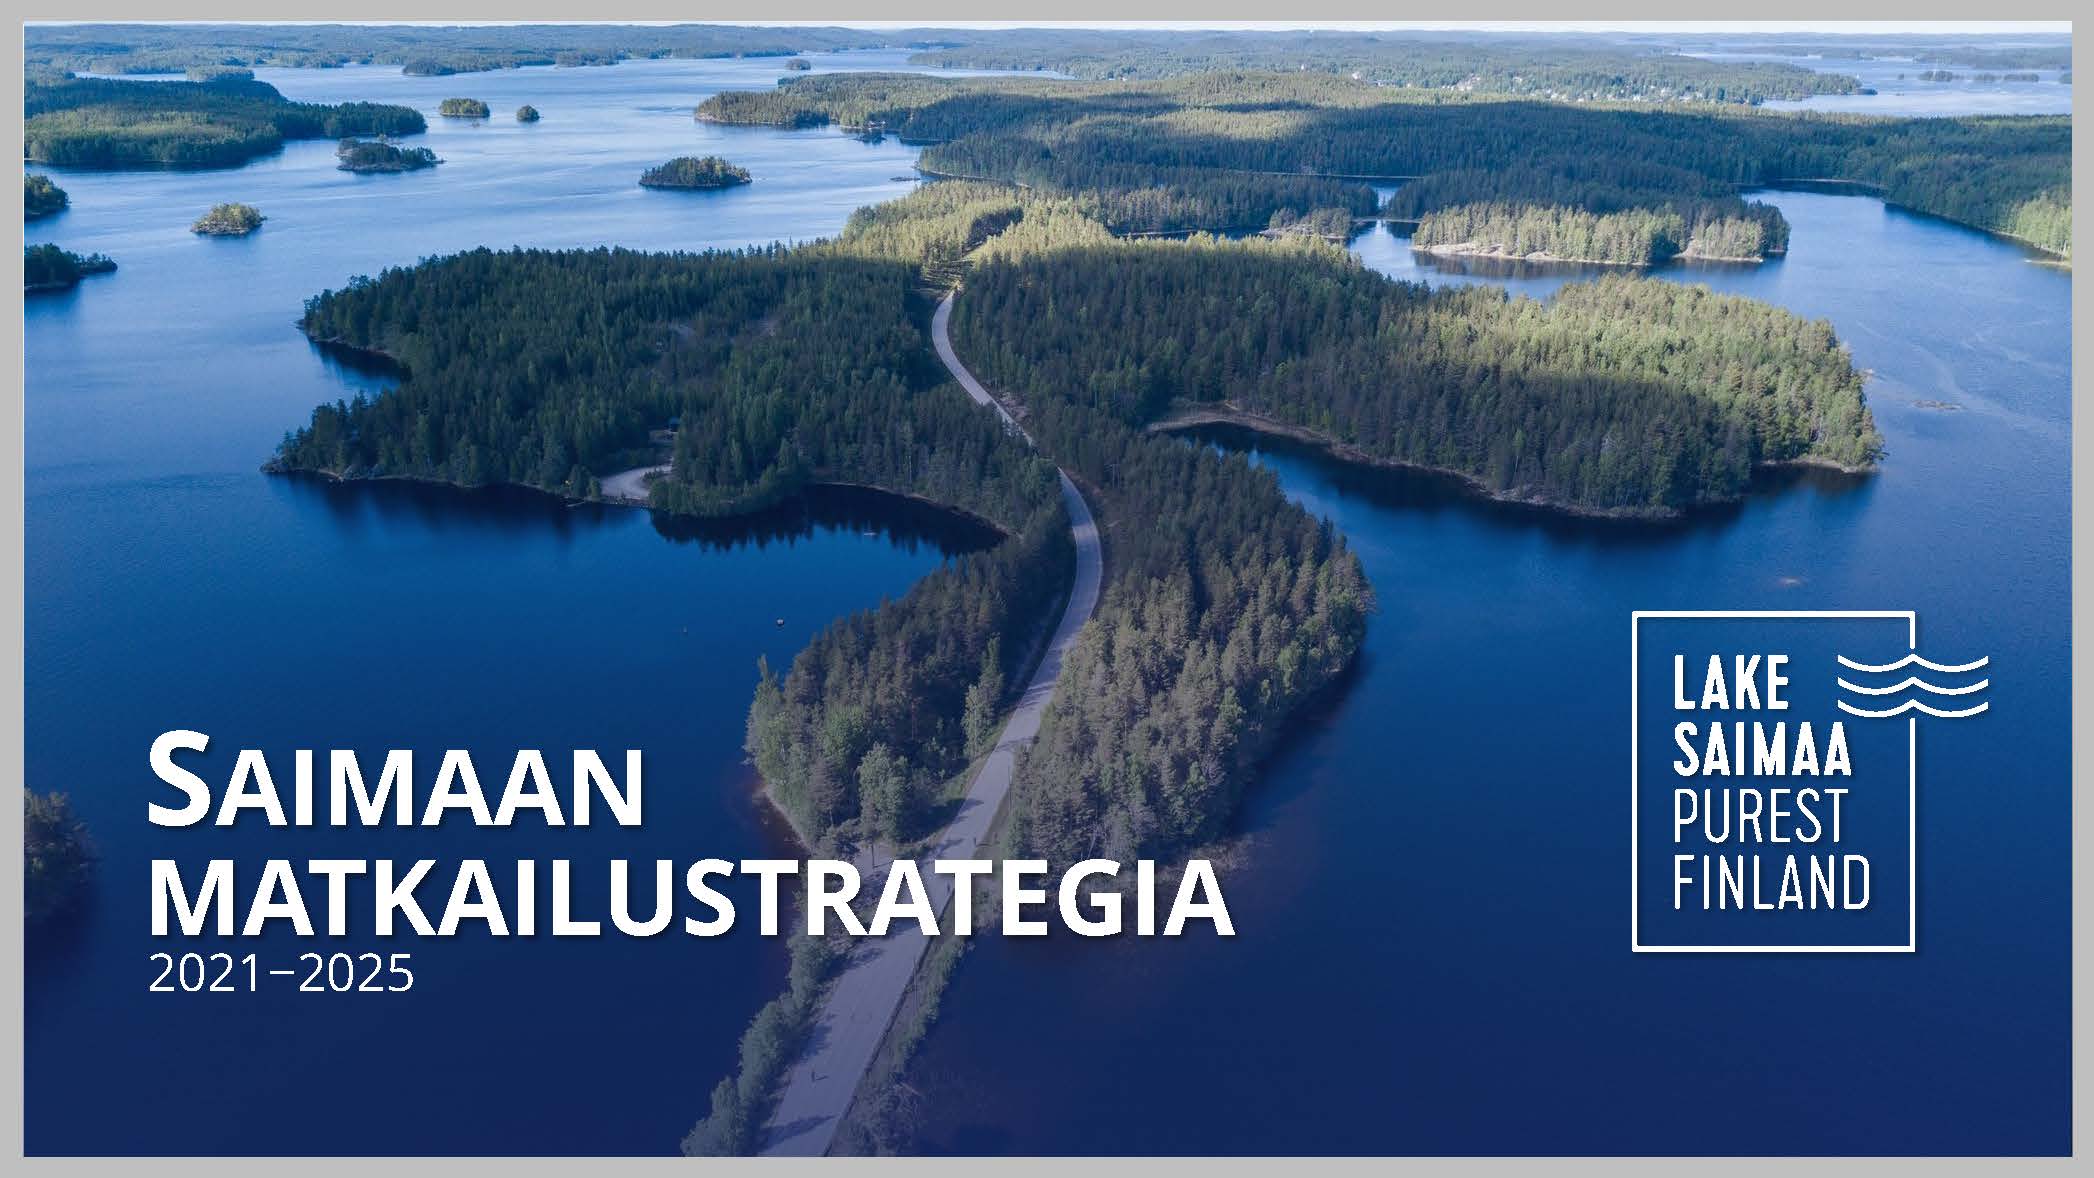 Matkailustrategia johdattaa Saimaan matkailua kohti tavoitetta olla vuonna 2025 Suomen kolmen tunnetuimman matkailualueen joukossa.